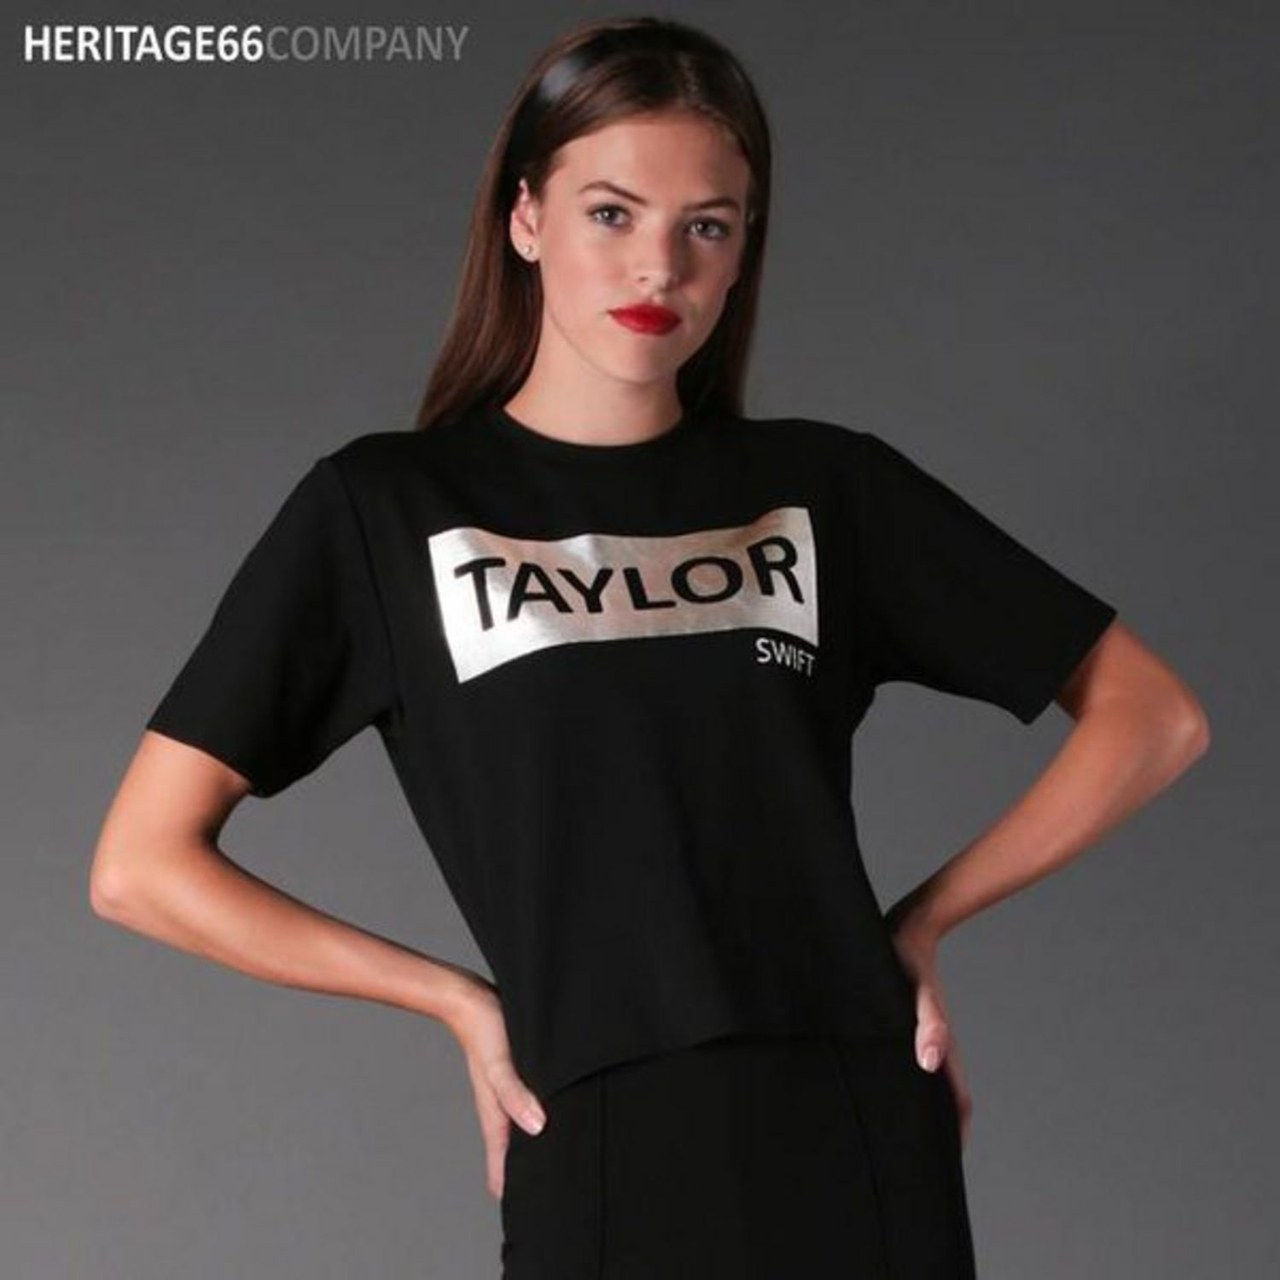 تايلور swift chinese t shirt heritage 66